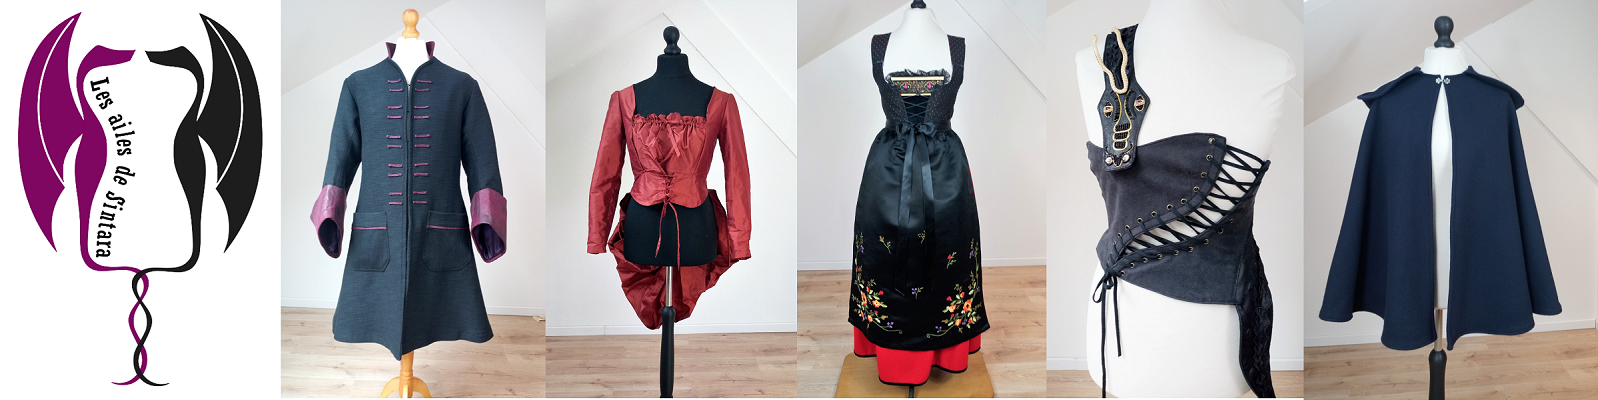 presente des costumes crées et confectionnés par l'atelier de couture les ailes de Sintara